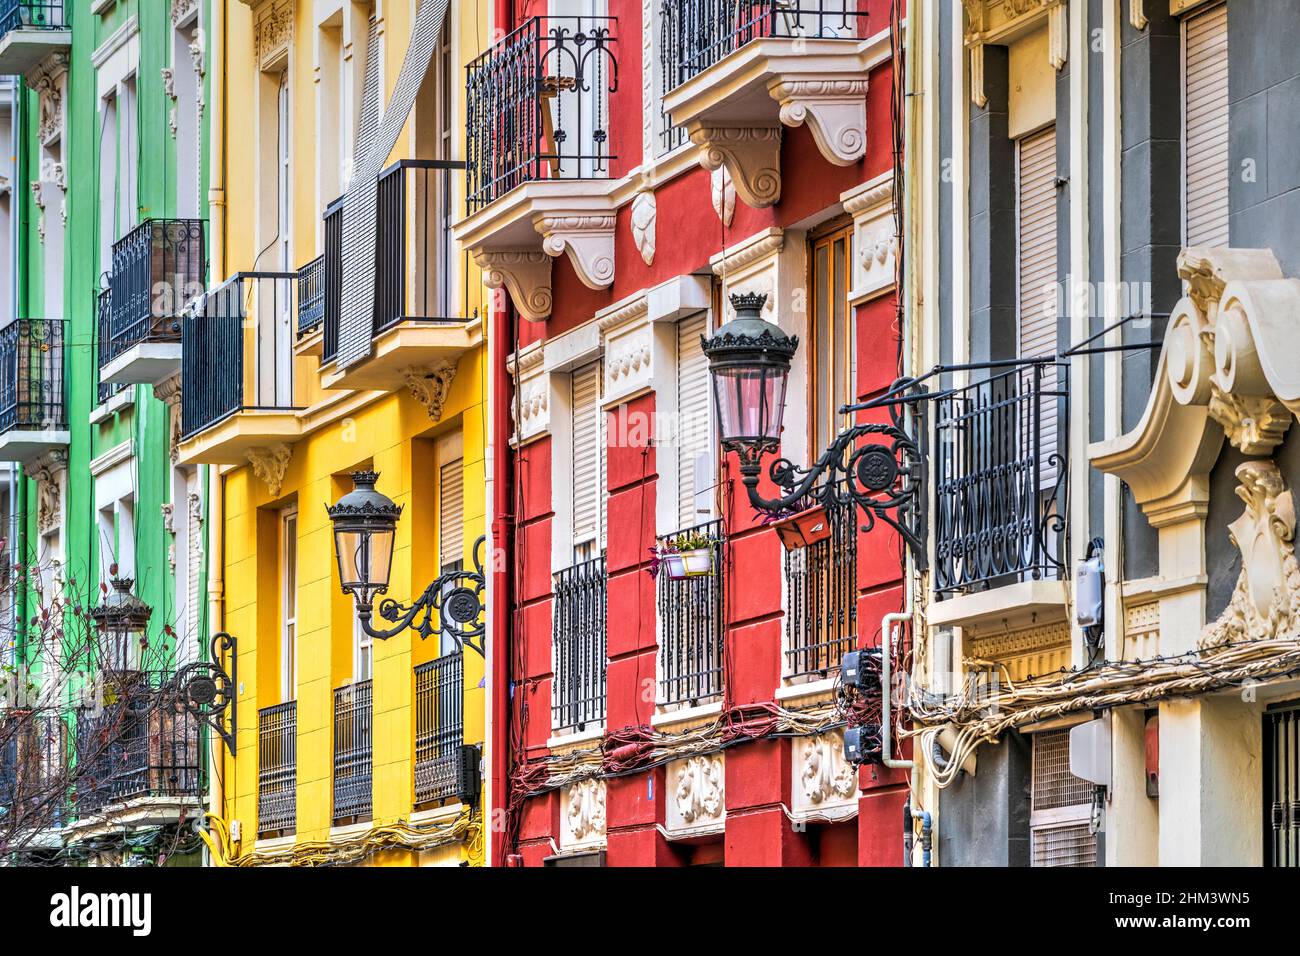 Farbenfrohe Gebäude in einer Straße von Ruzafa, Valencia, Spanien Stockfoto